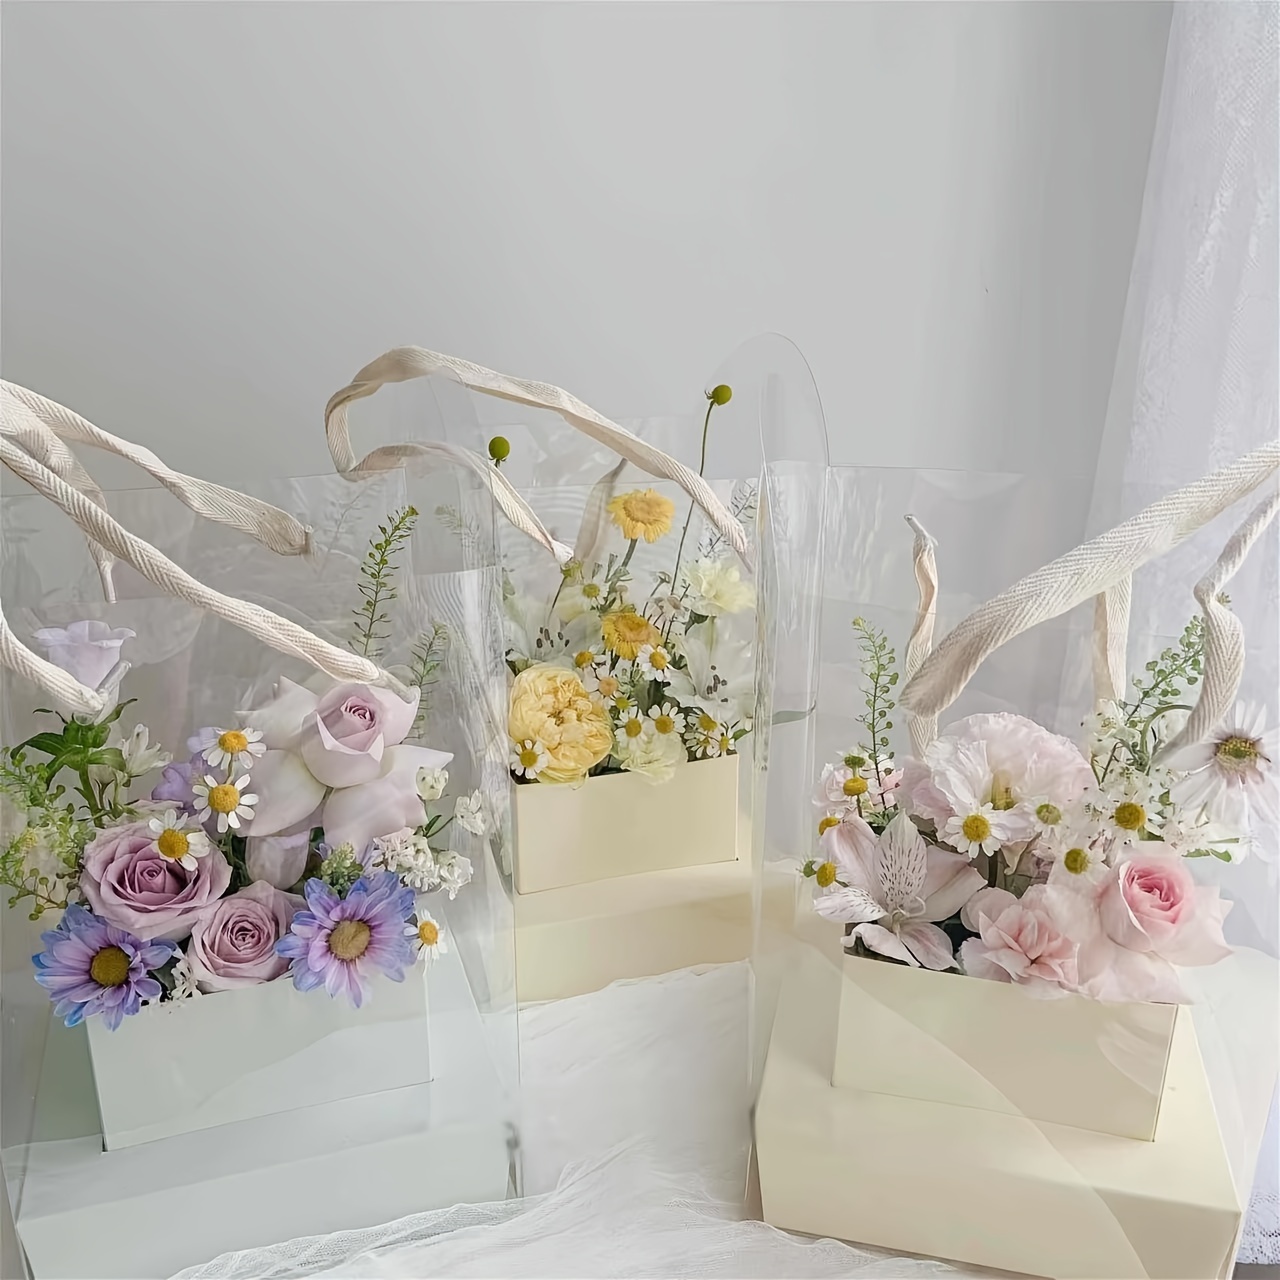 Lien papier armé - Fournitures - Emballage - Art floral et décoration